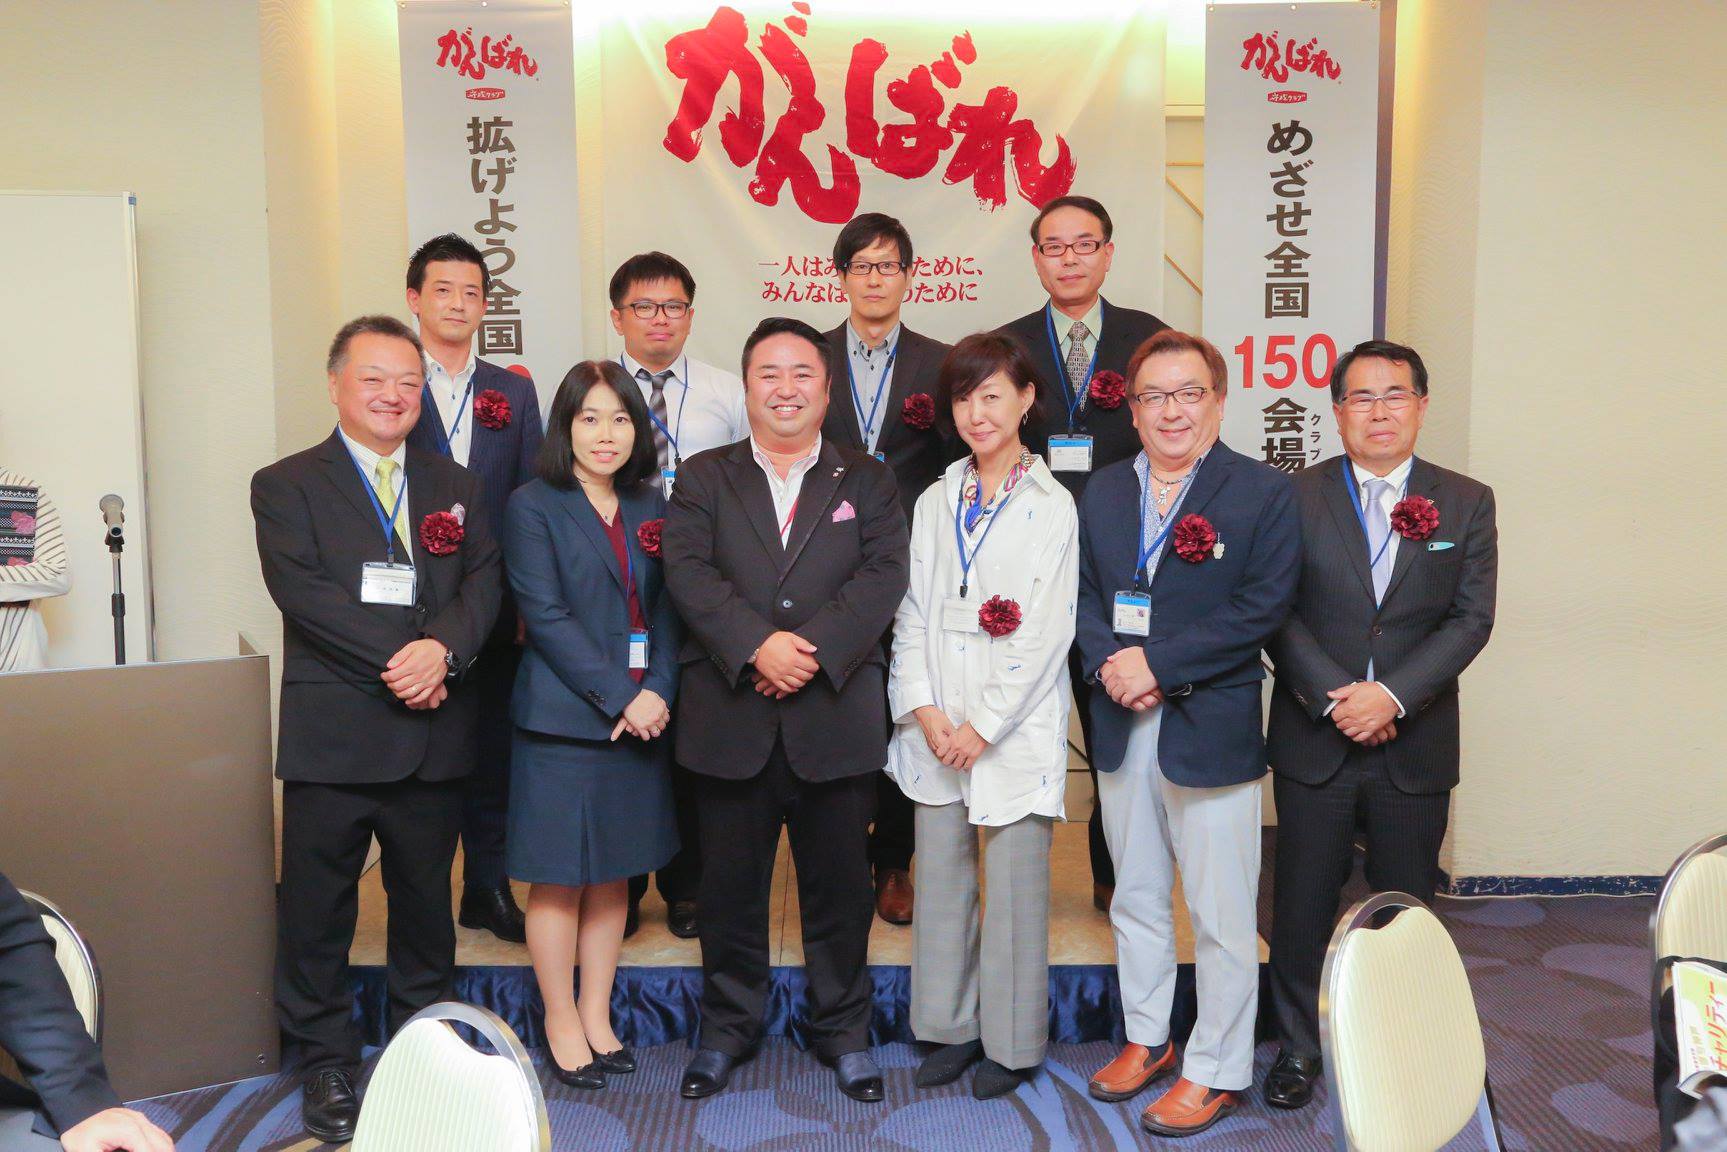 守成クラブ神戸:ビジネス交流会の新しいメンバー